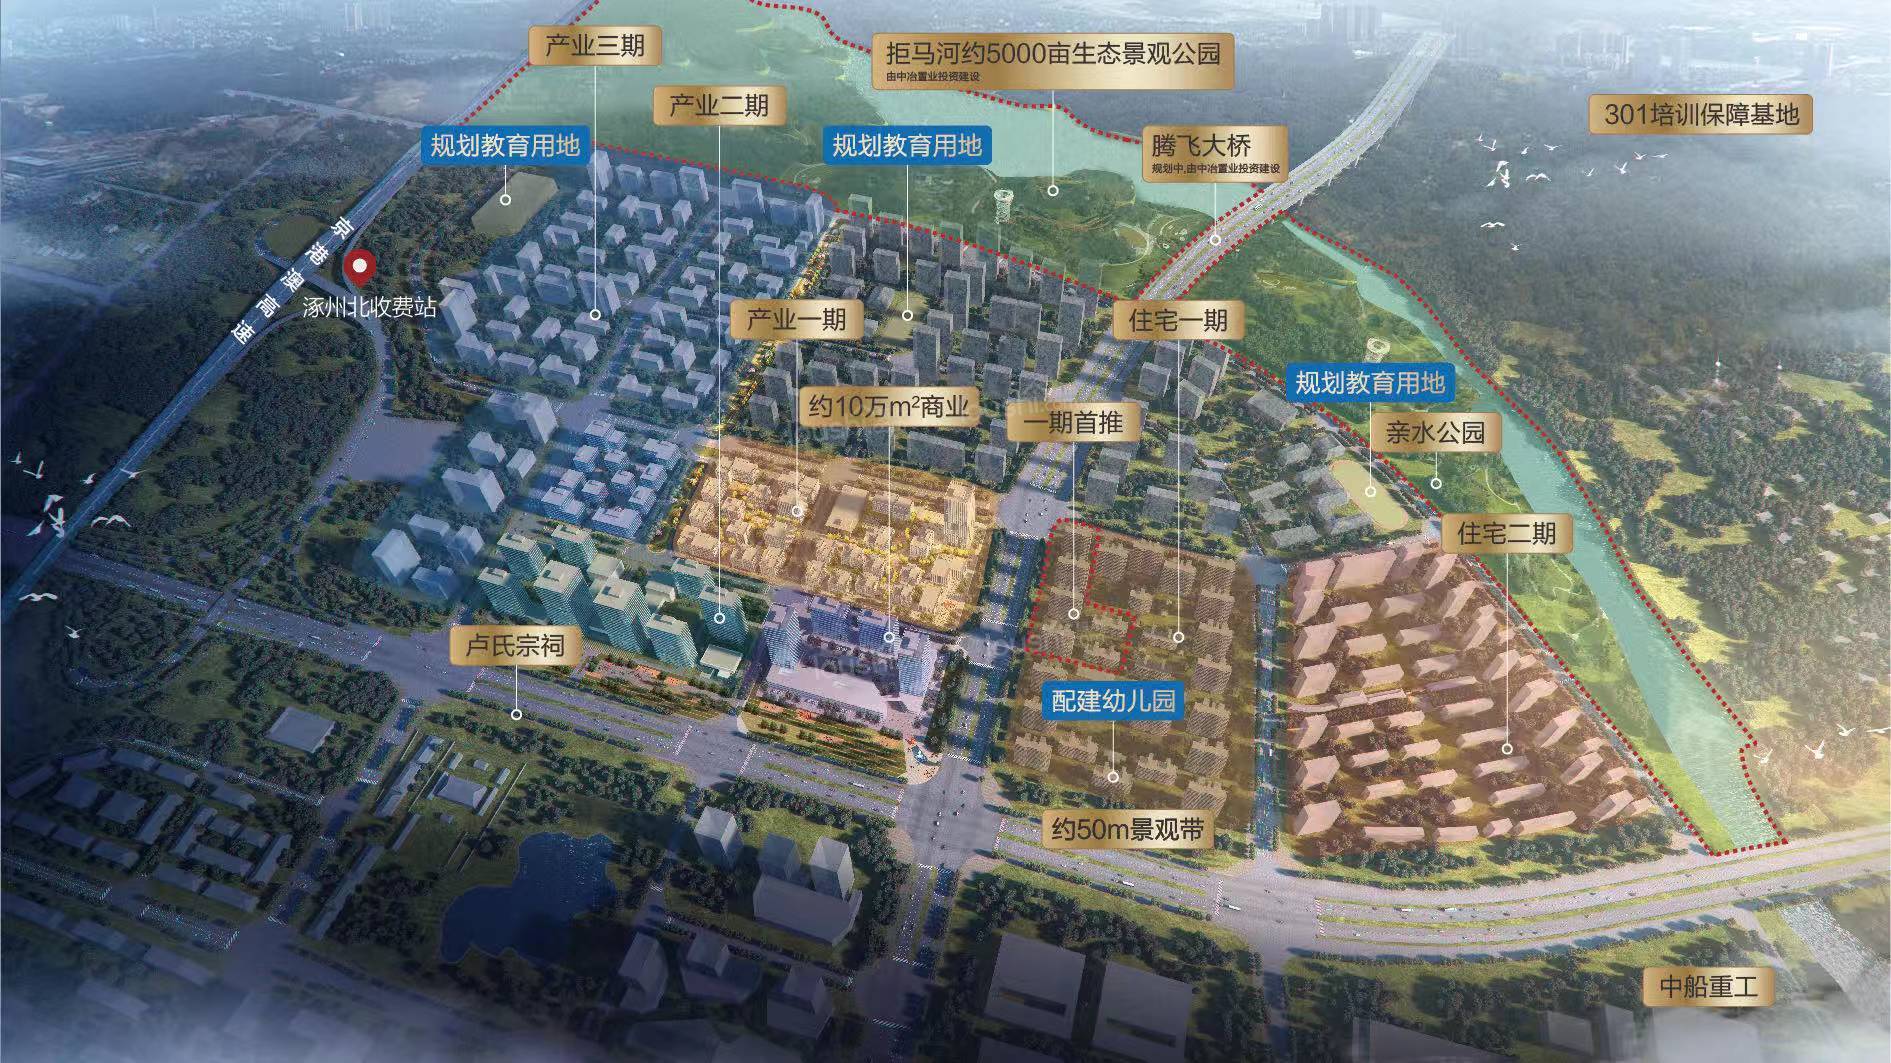 涿州中冶未来城二期项目高层住宅、洋房暂定规划户数